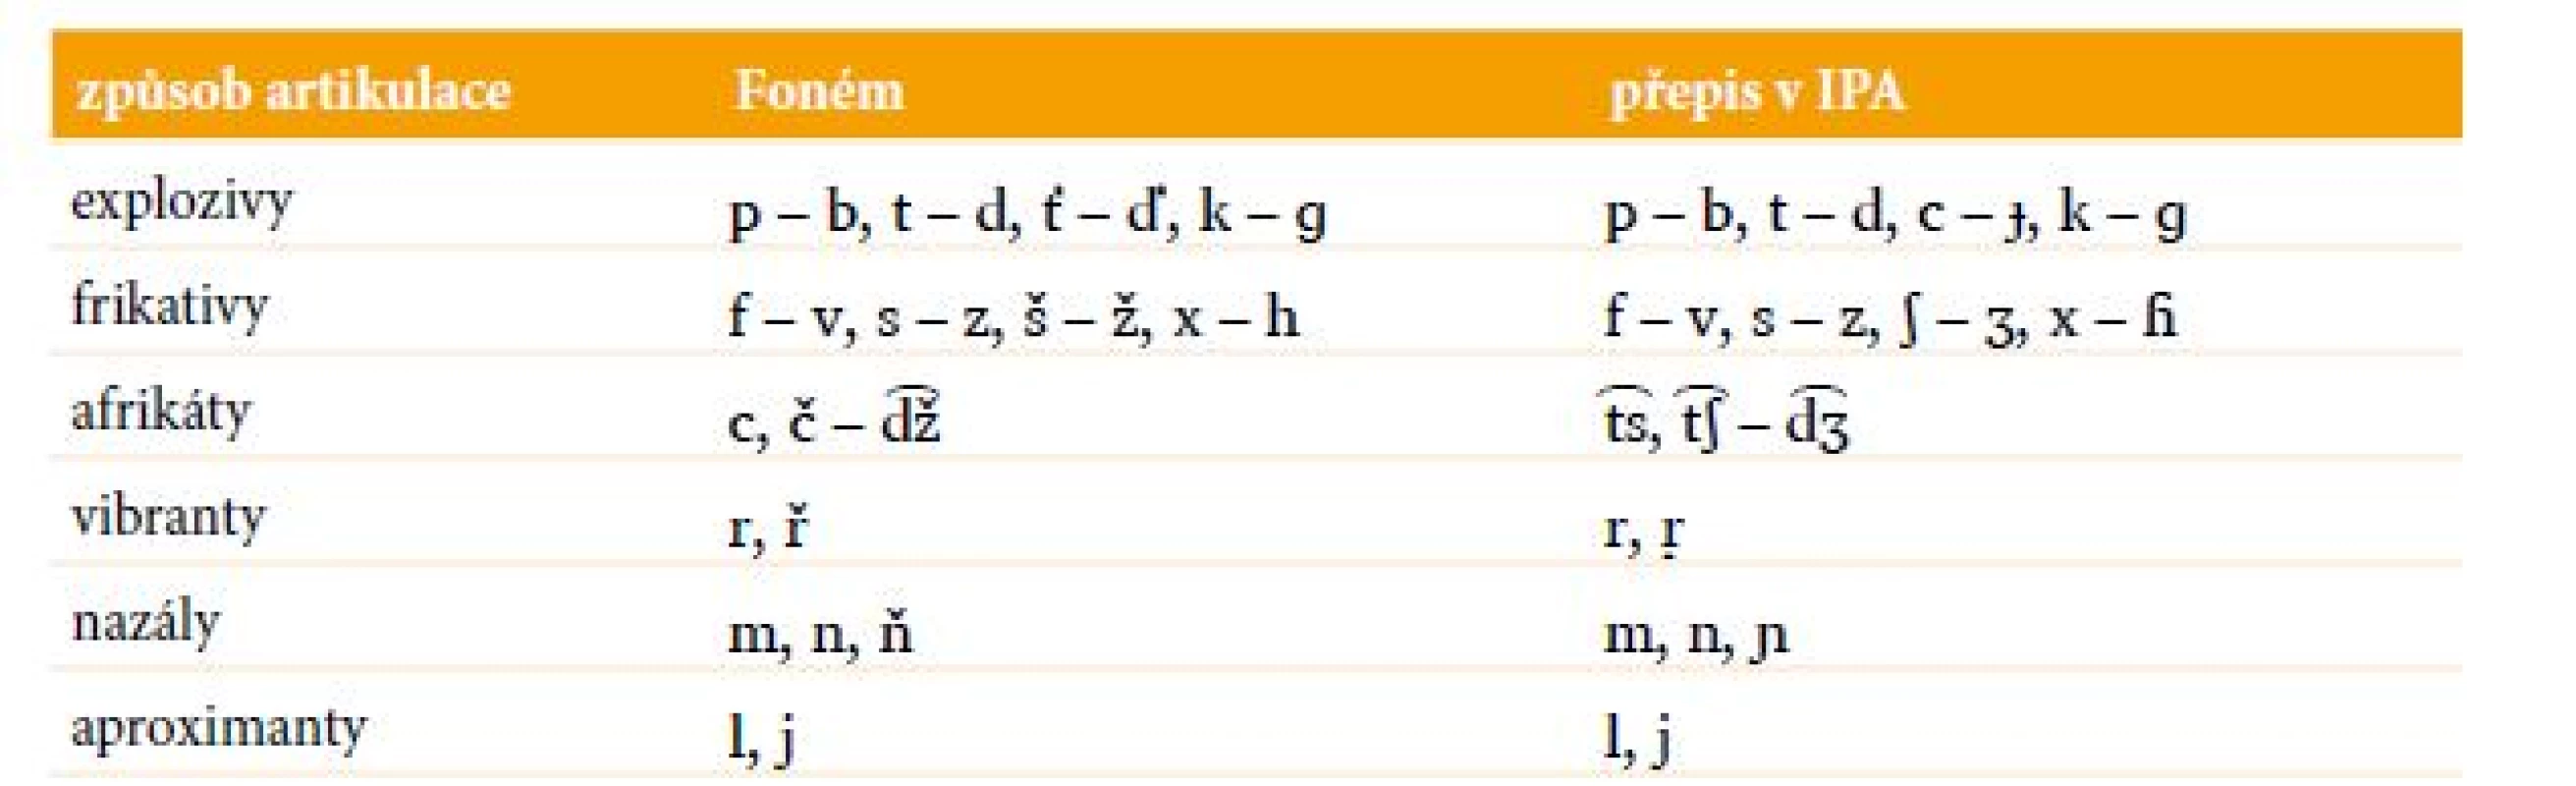 Souhláskové fonémy v češtině seskupené podle způsobu artikulace; v posledním sloupci je uvedena odpovídající transkripce v IPA.